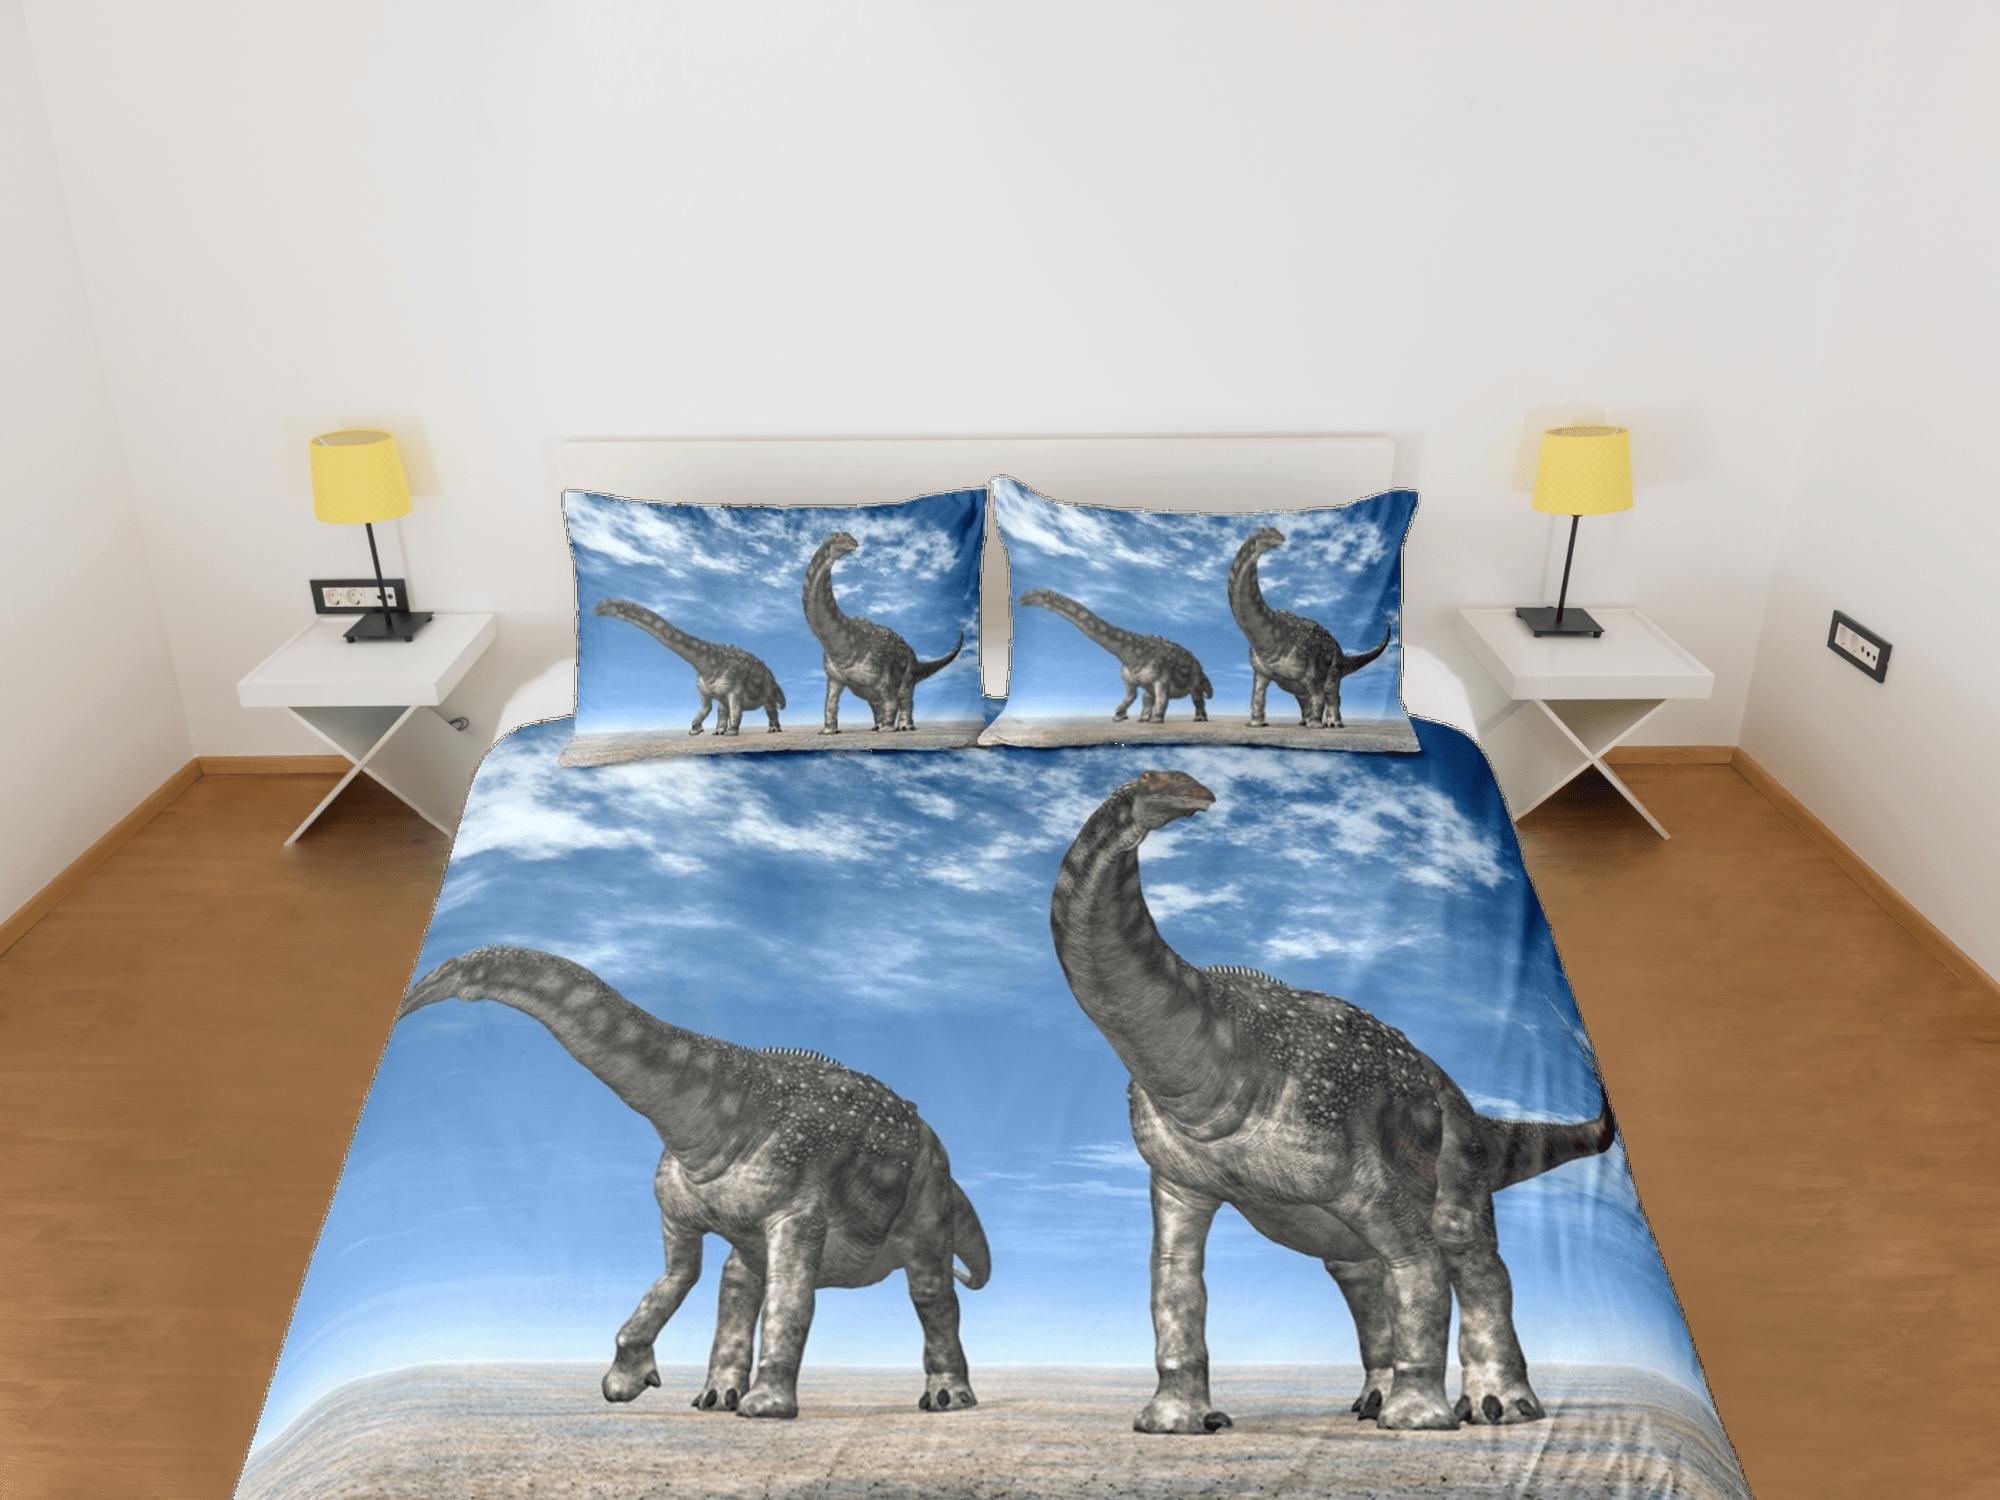 daintyduvet Diplodocus dinosaurs bedding, adult duvet cover, dorm bedding, teen boys bedding set full, animal prints duvet cover set, dinosaur gift